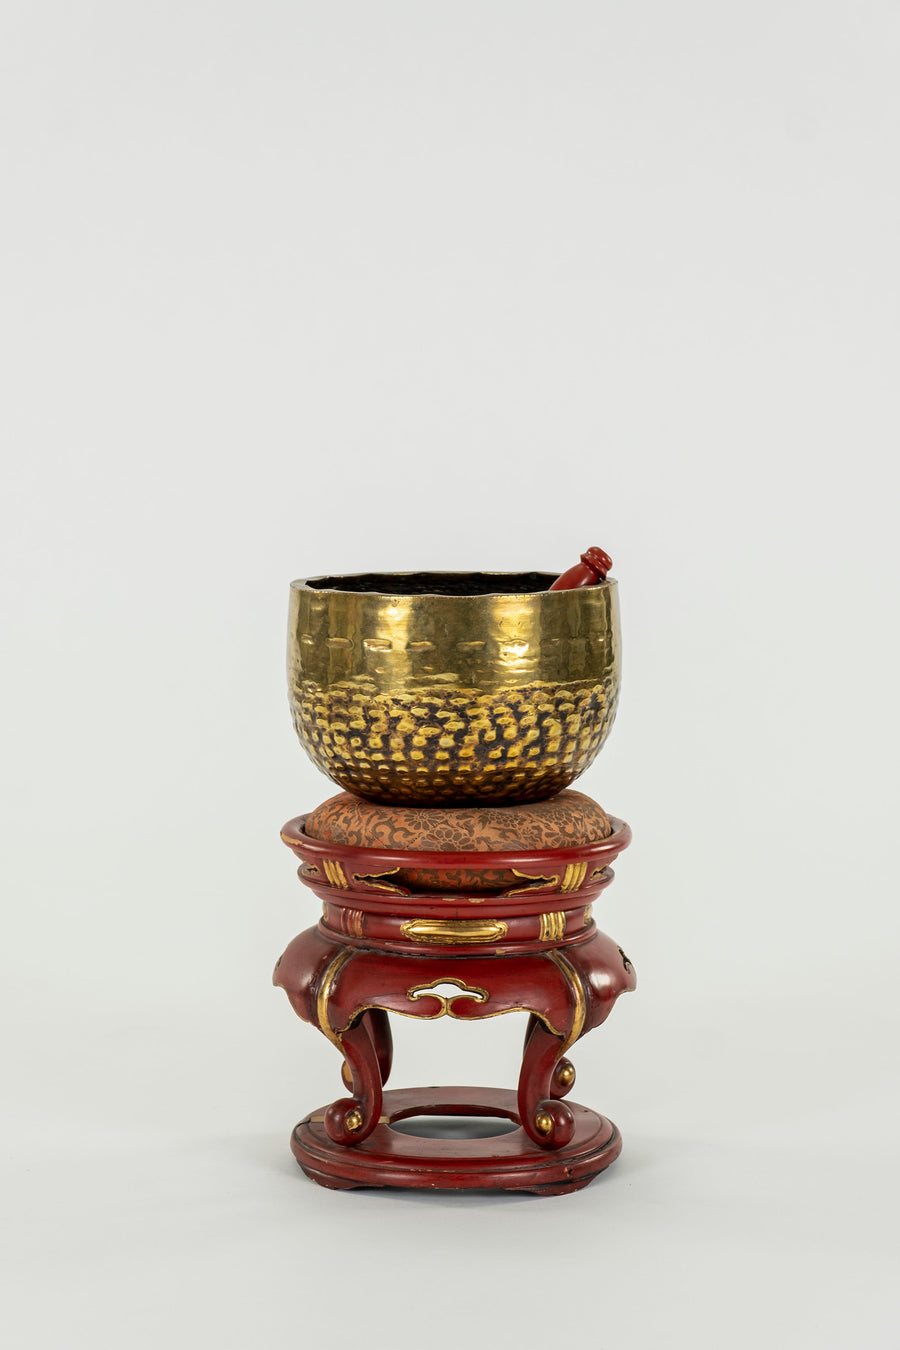 20th Century Tibetan Singing Bowl